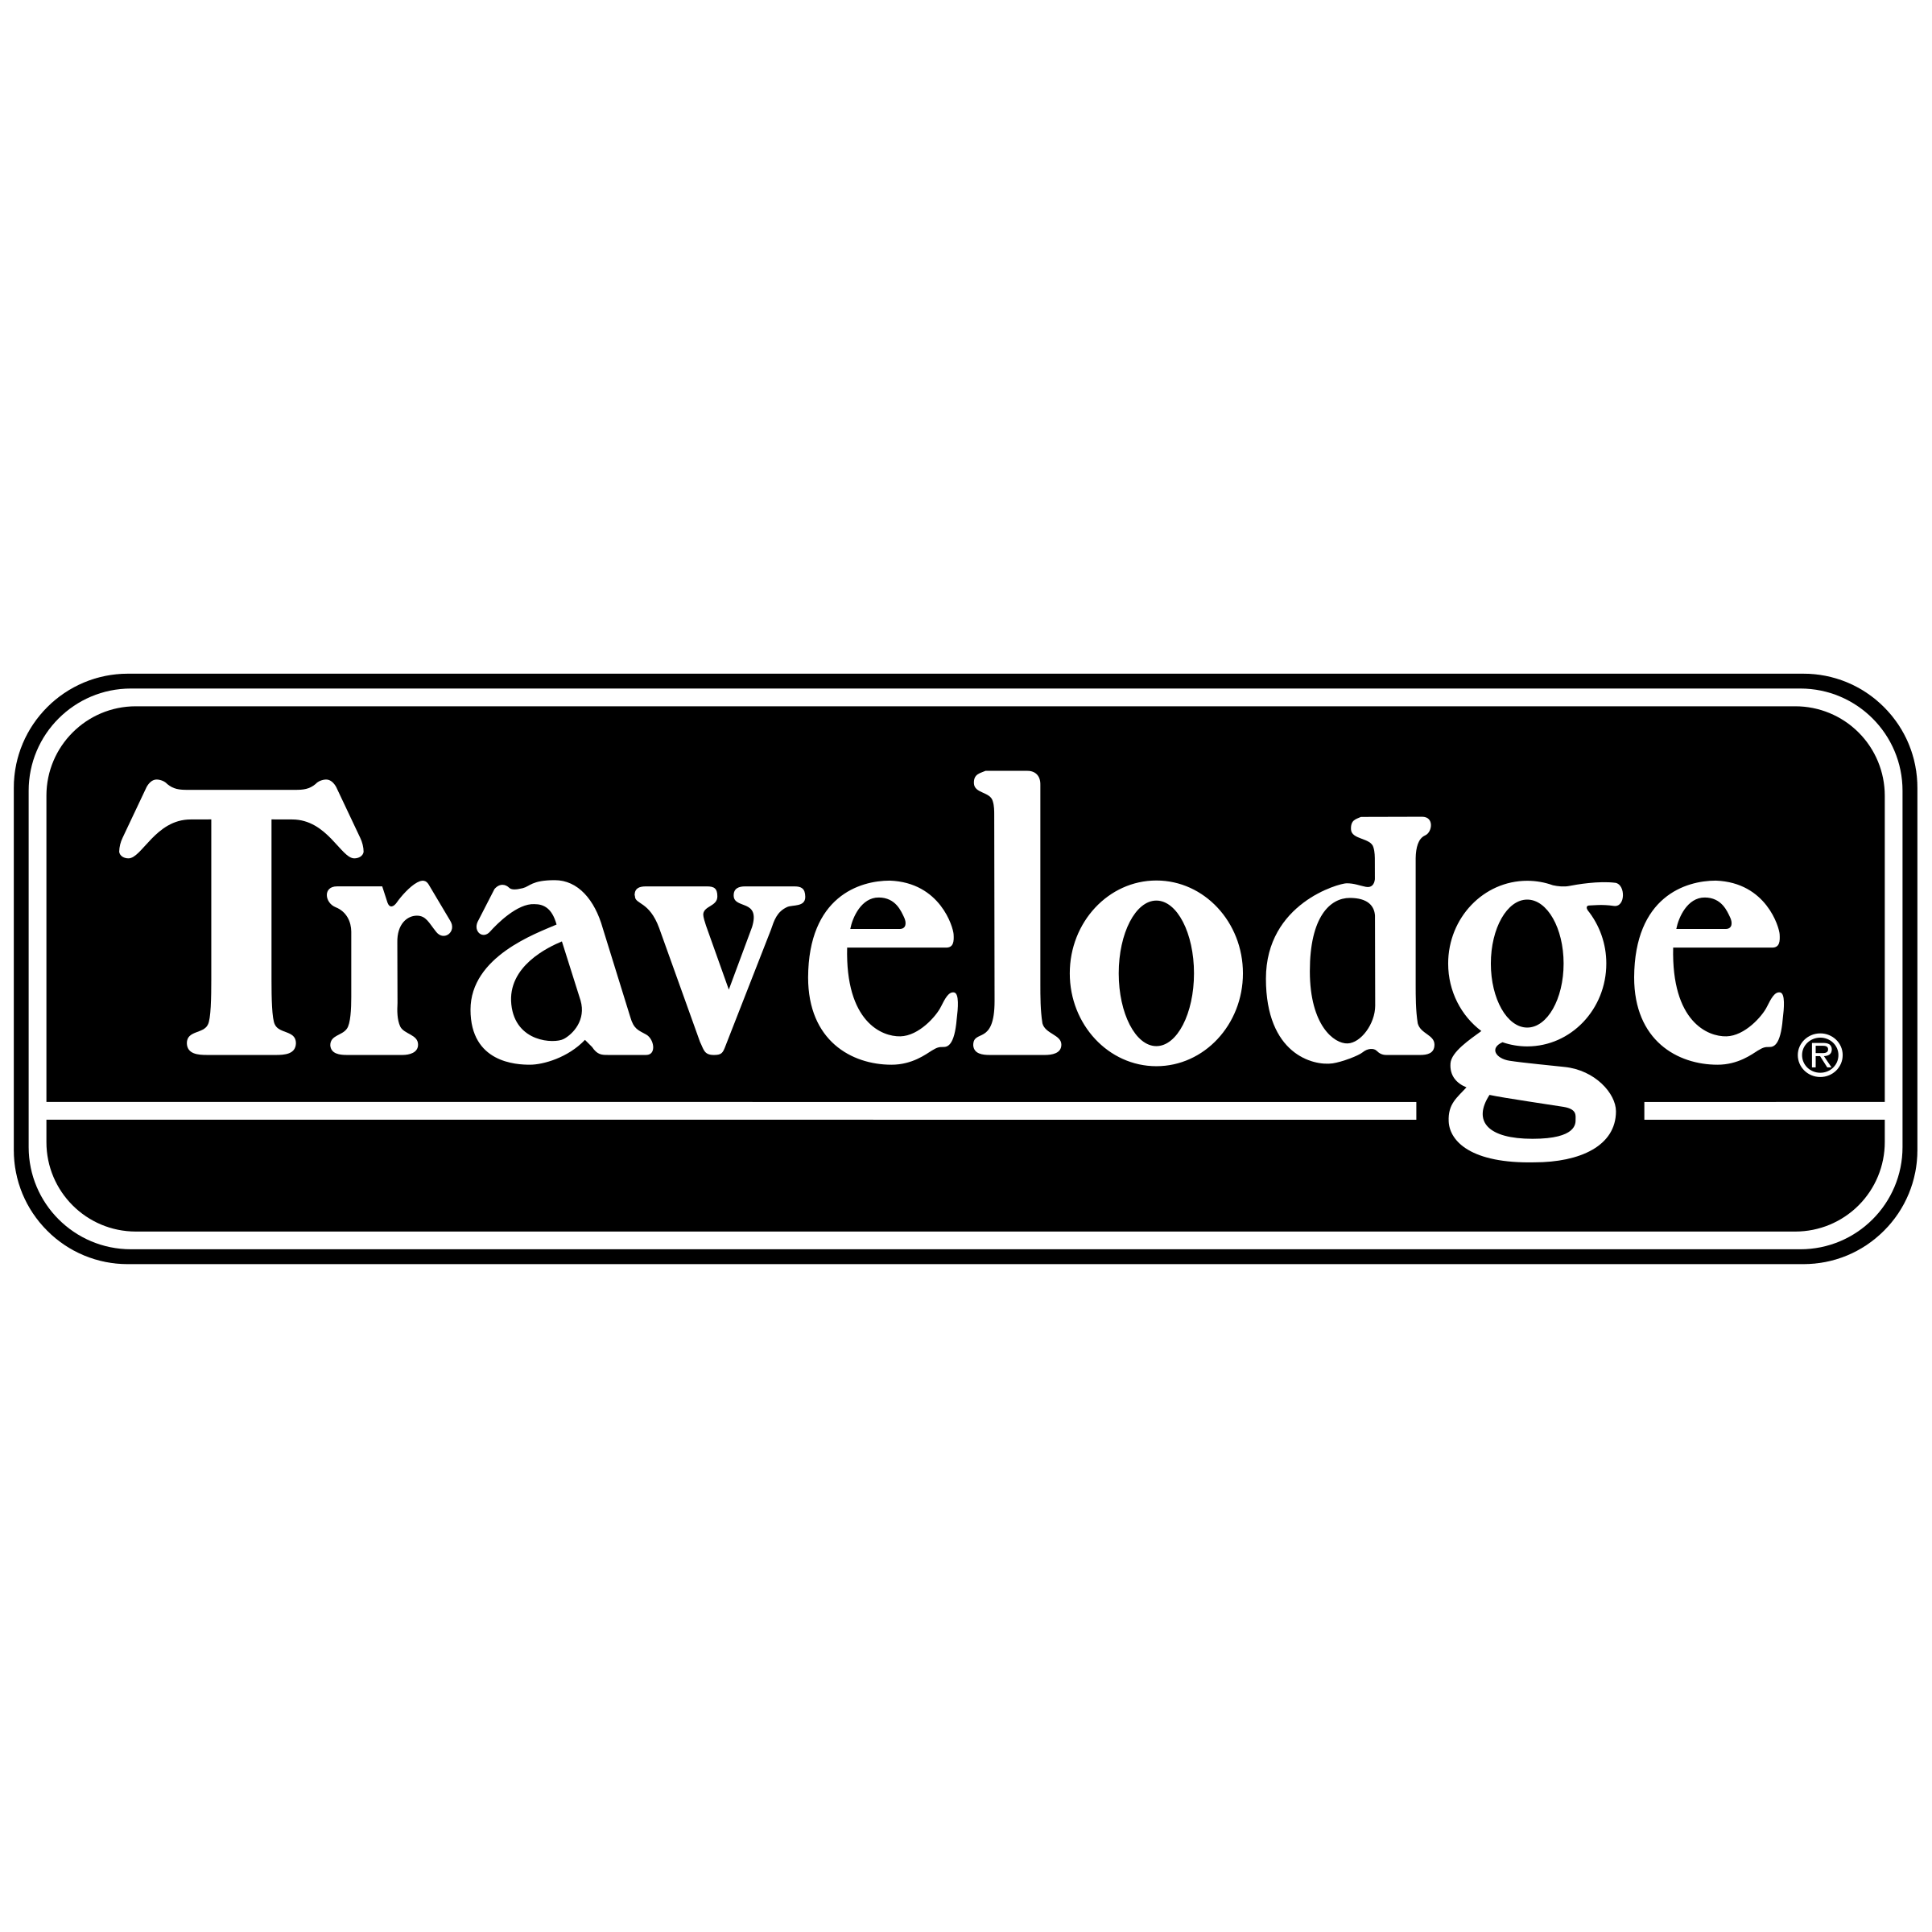 Travelodge Logo - Travelodge Logo PNG Transparent & SVG Vector